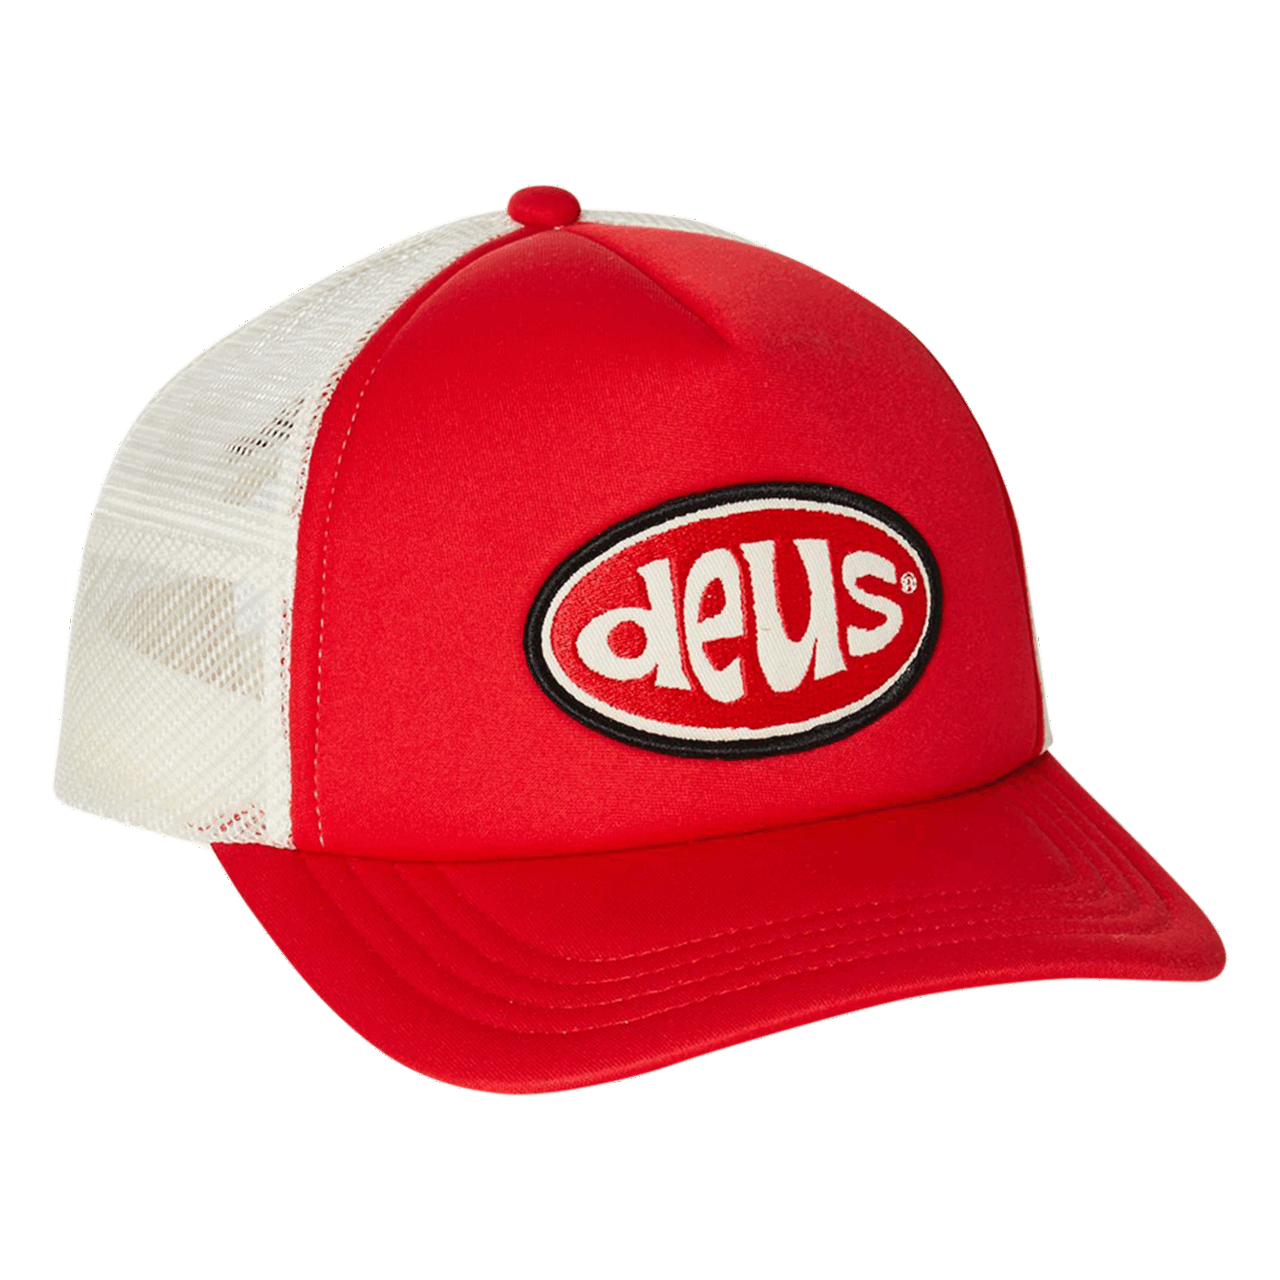 Deus Shiner Trucker Cap - Red